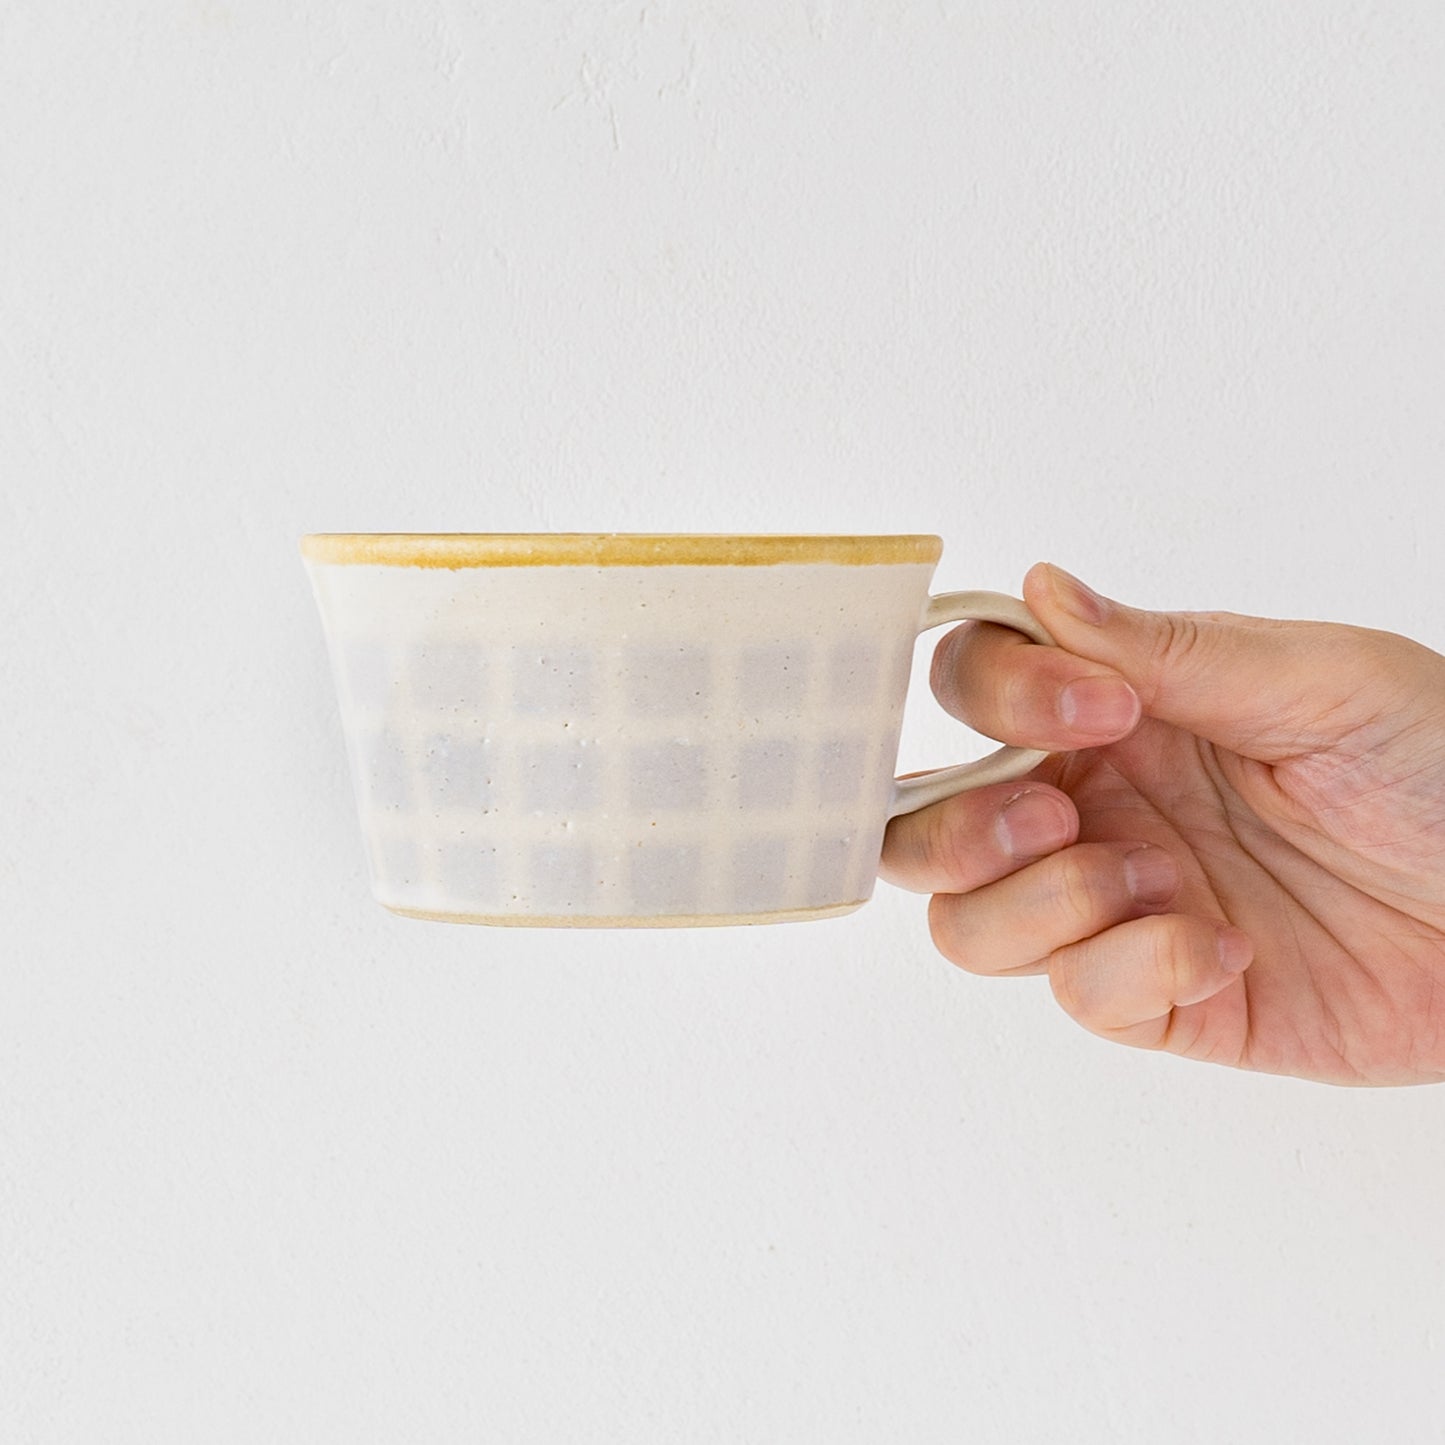 指掛がよくて持ちやすい岡洋美さんの格子柄のスープカップ